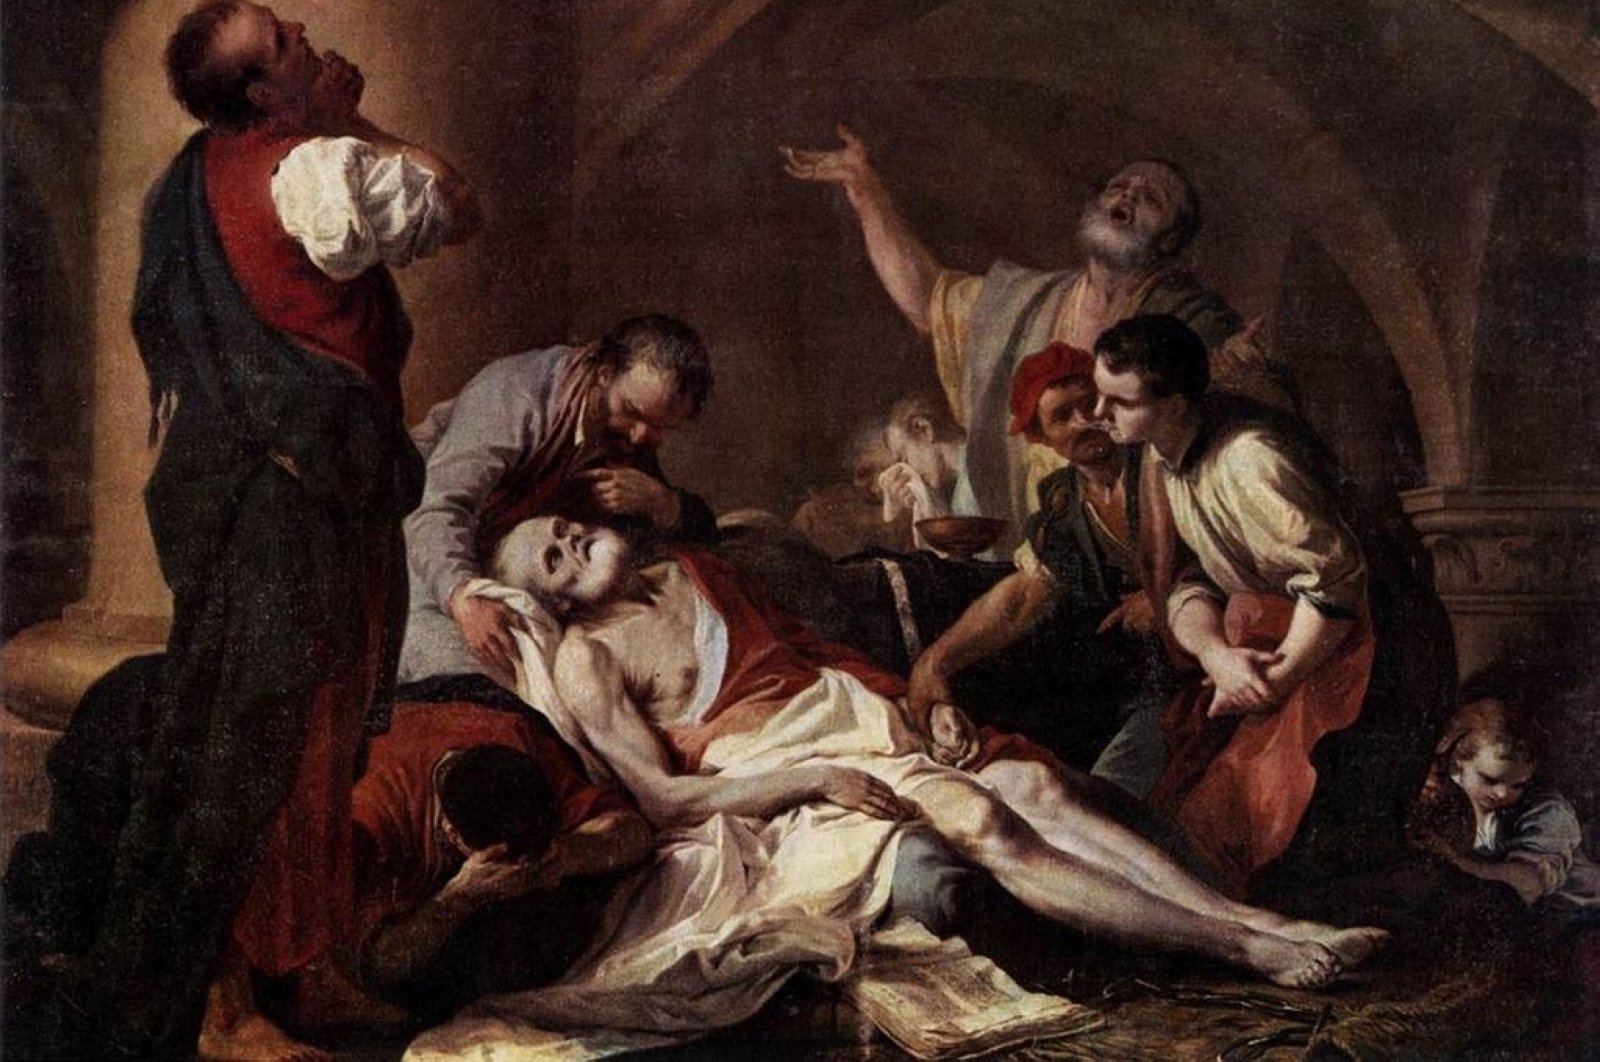 Tentang kematian: Bagaimana kematian membentuk pemikiran filosofis?